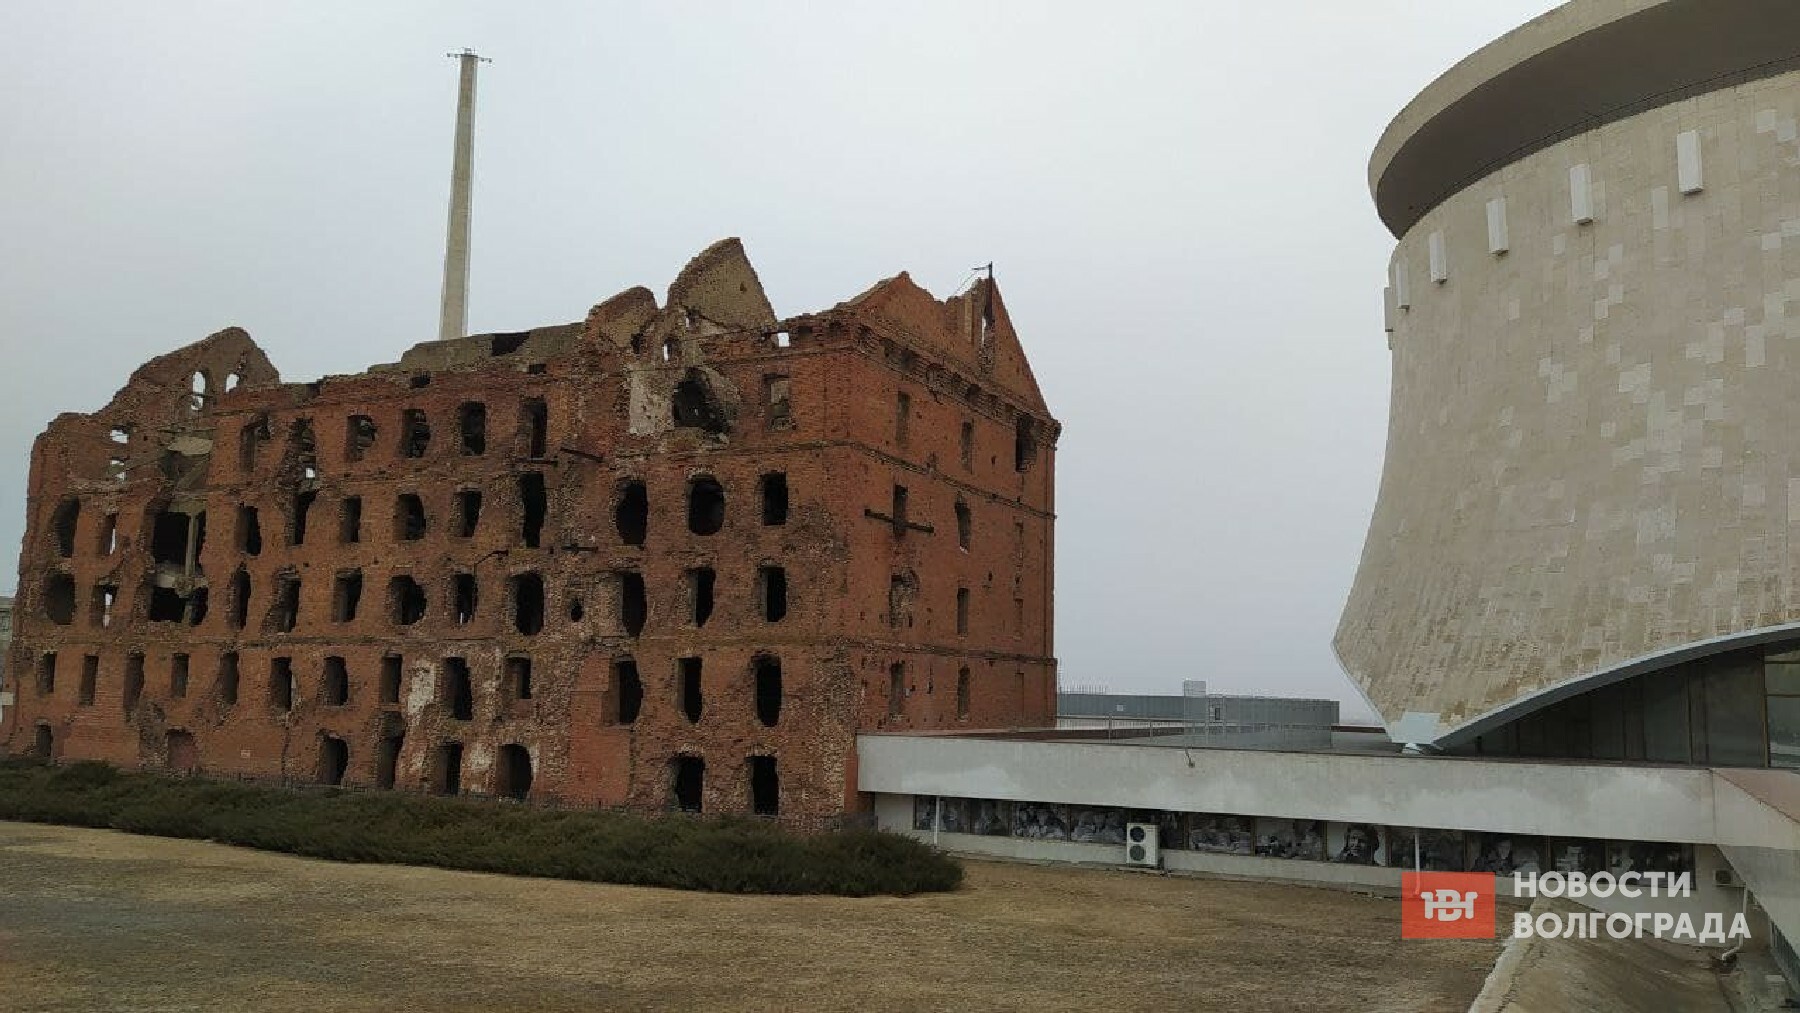 Мельницу Гергардта в Волгограде «законсервируют» после обрушения